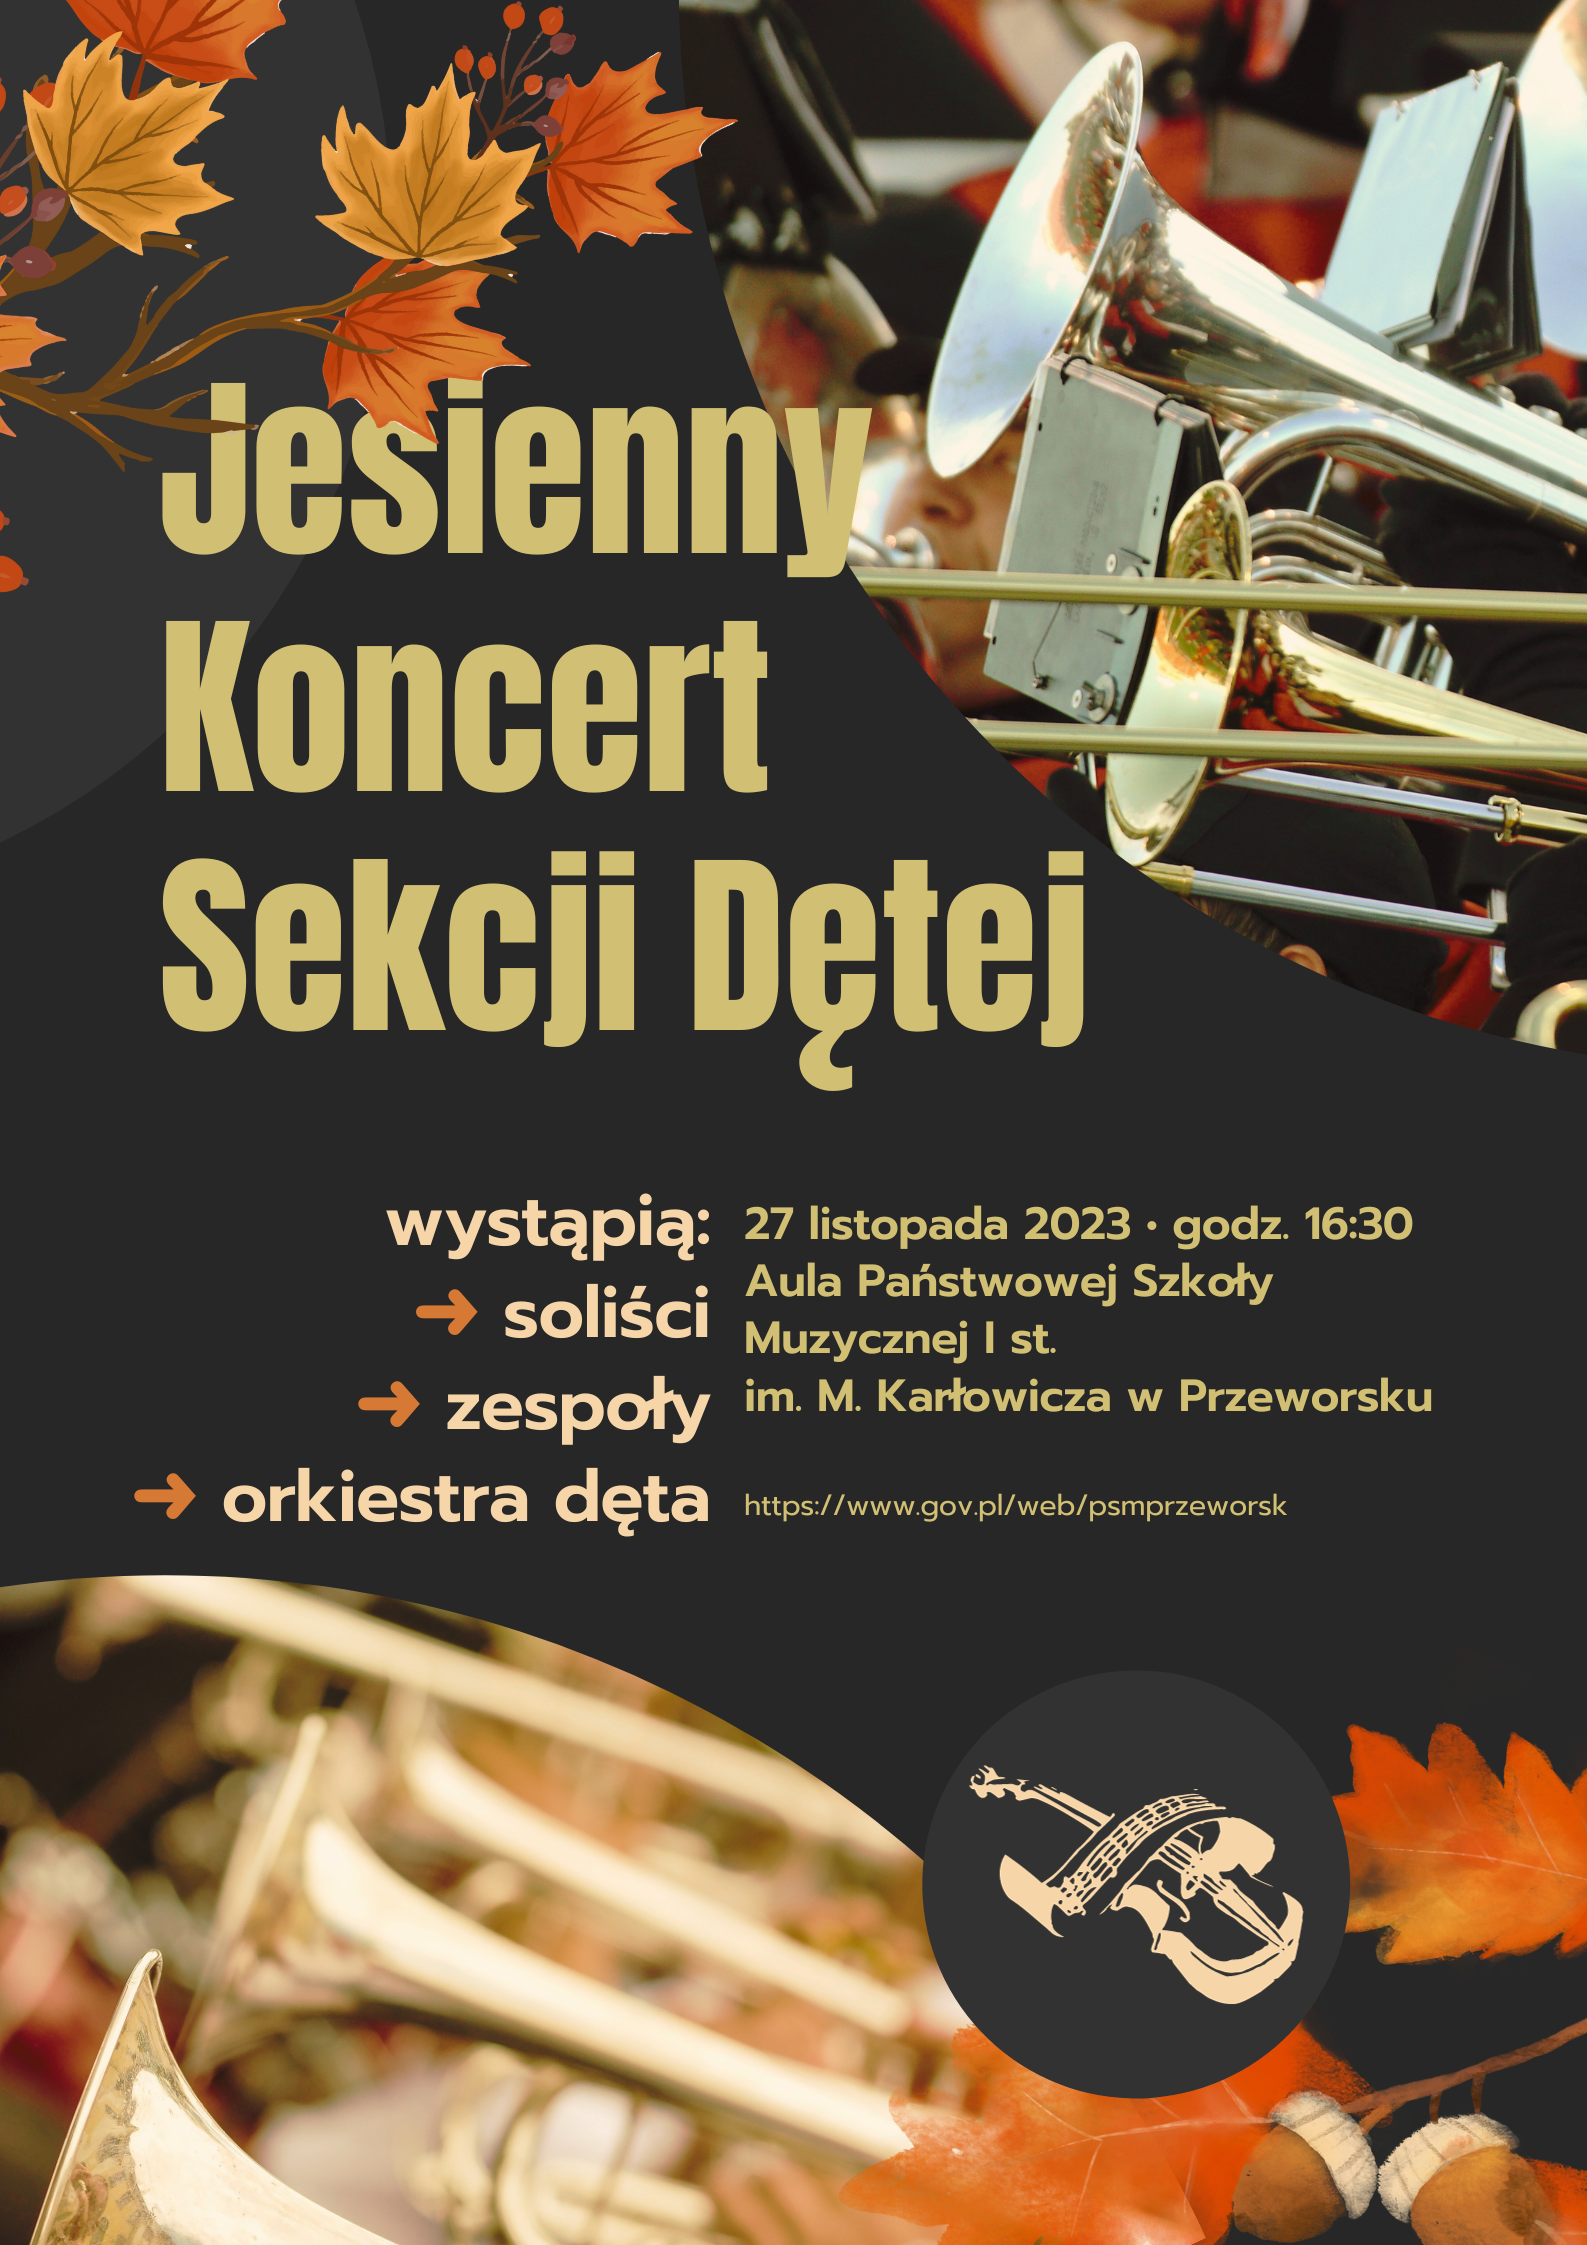 Jesienny koncert sekcji dętej